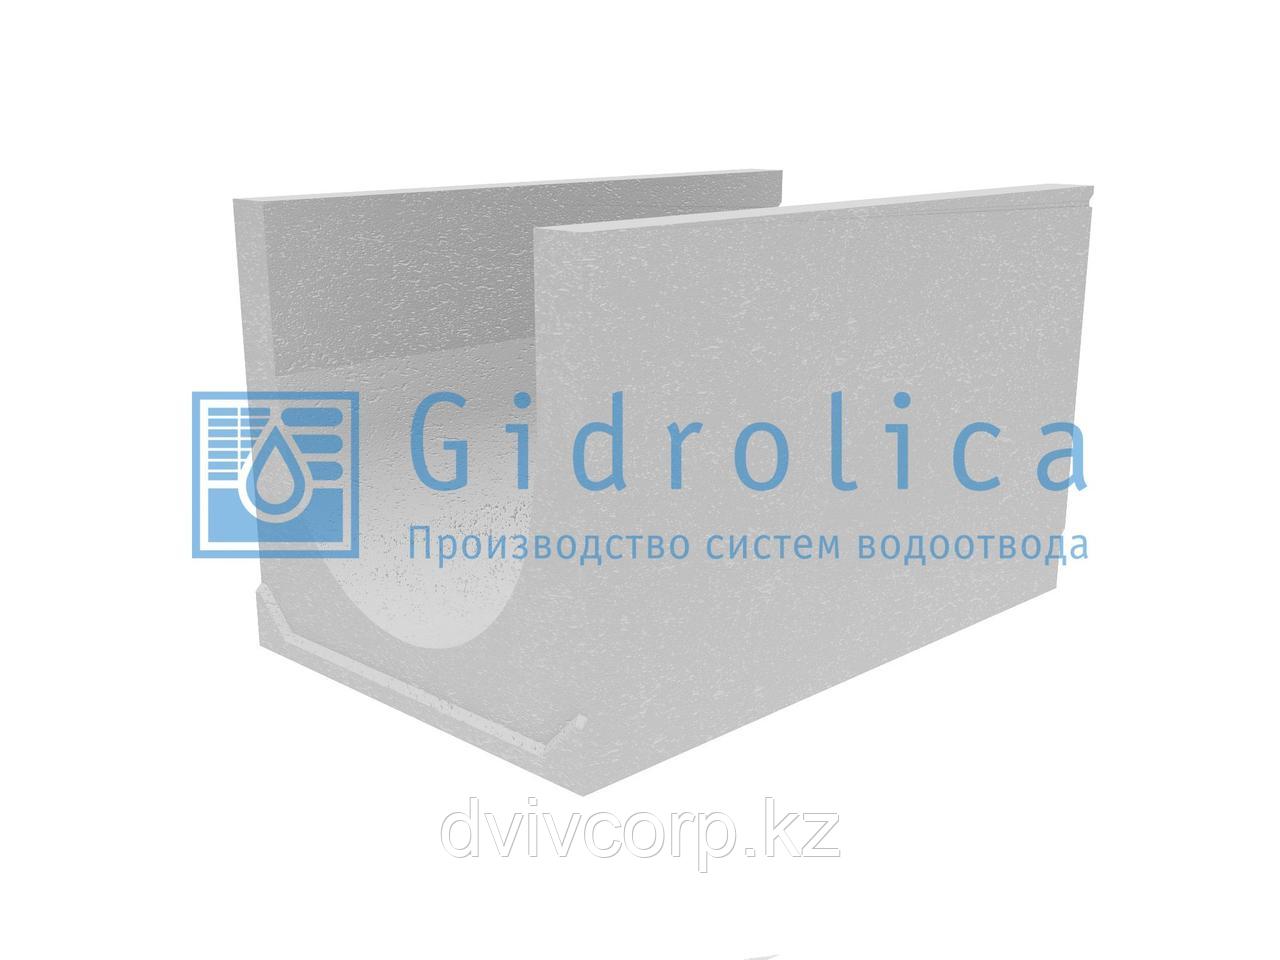 Лоток водоотводный бетонный коробчатый (СО-500мм), с уклоном 0,5%  КUу 100.65(50).61(52) - BGU-XL, № 32